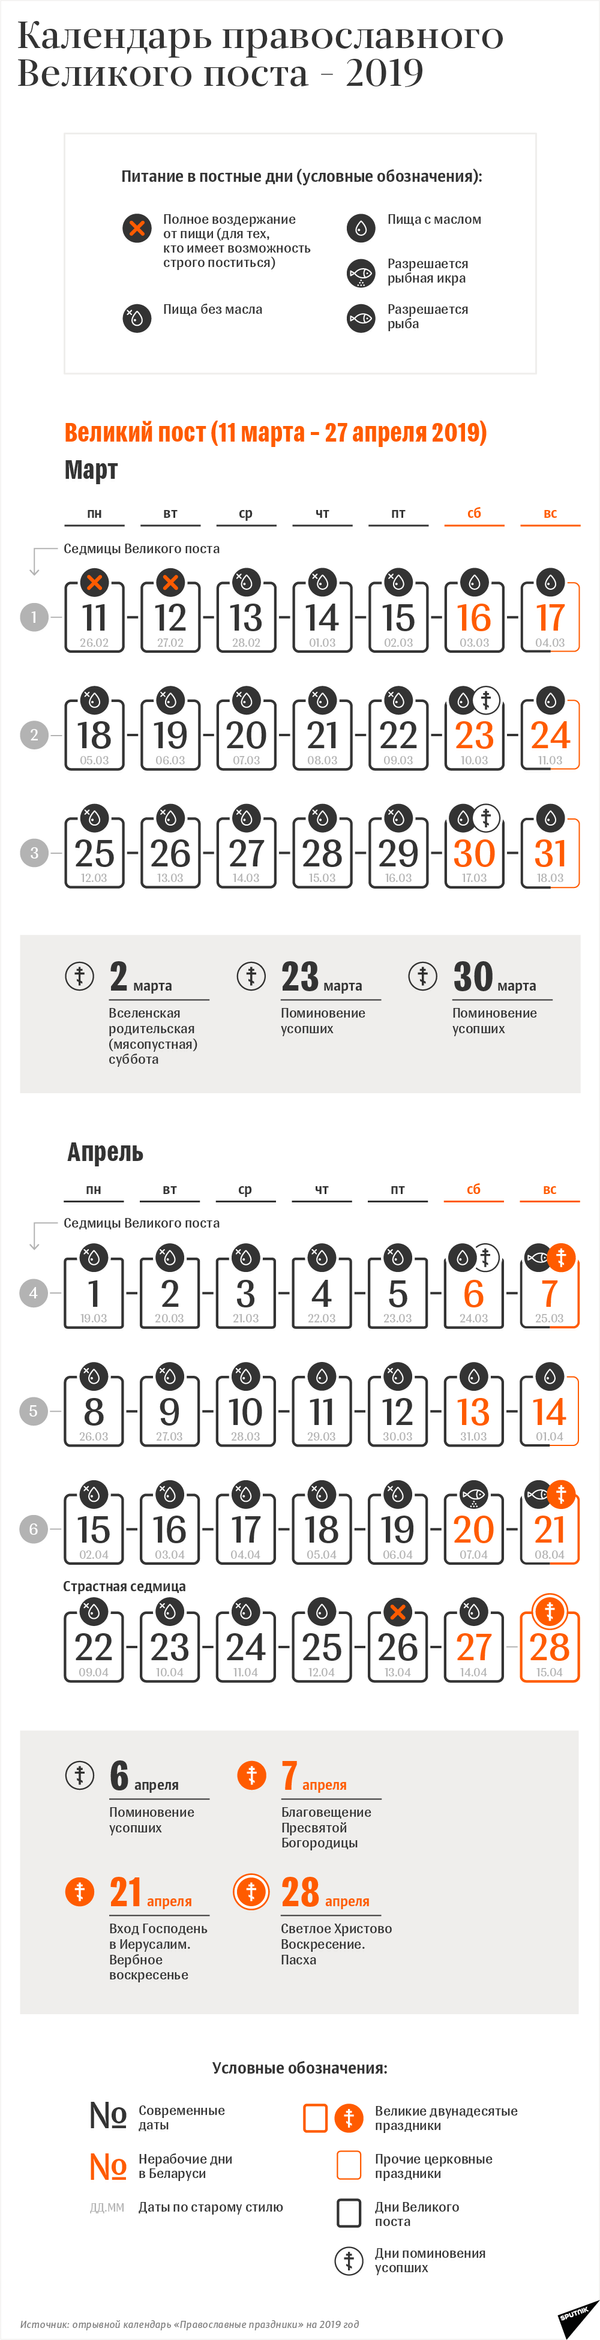 Календарь православного Великого поста – 2019 | Инфографика sputnik.by - Sputnik Беларусь